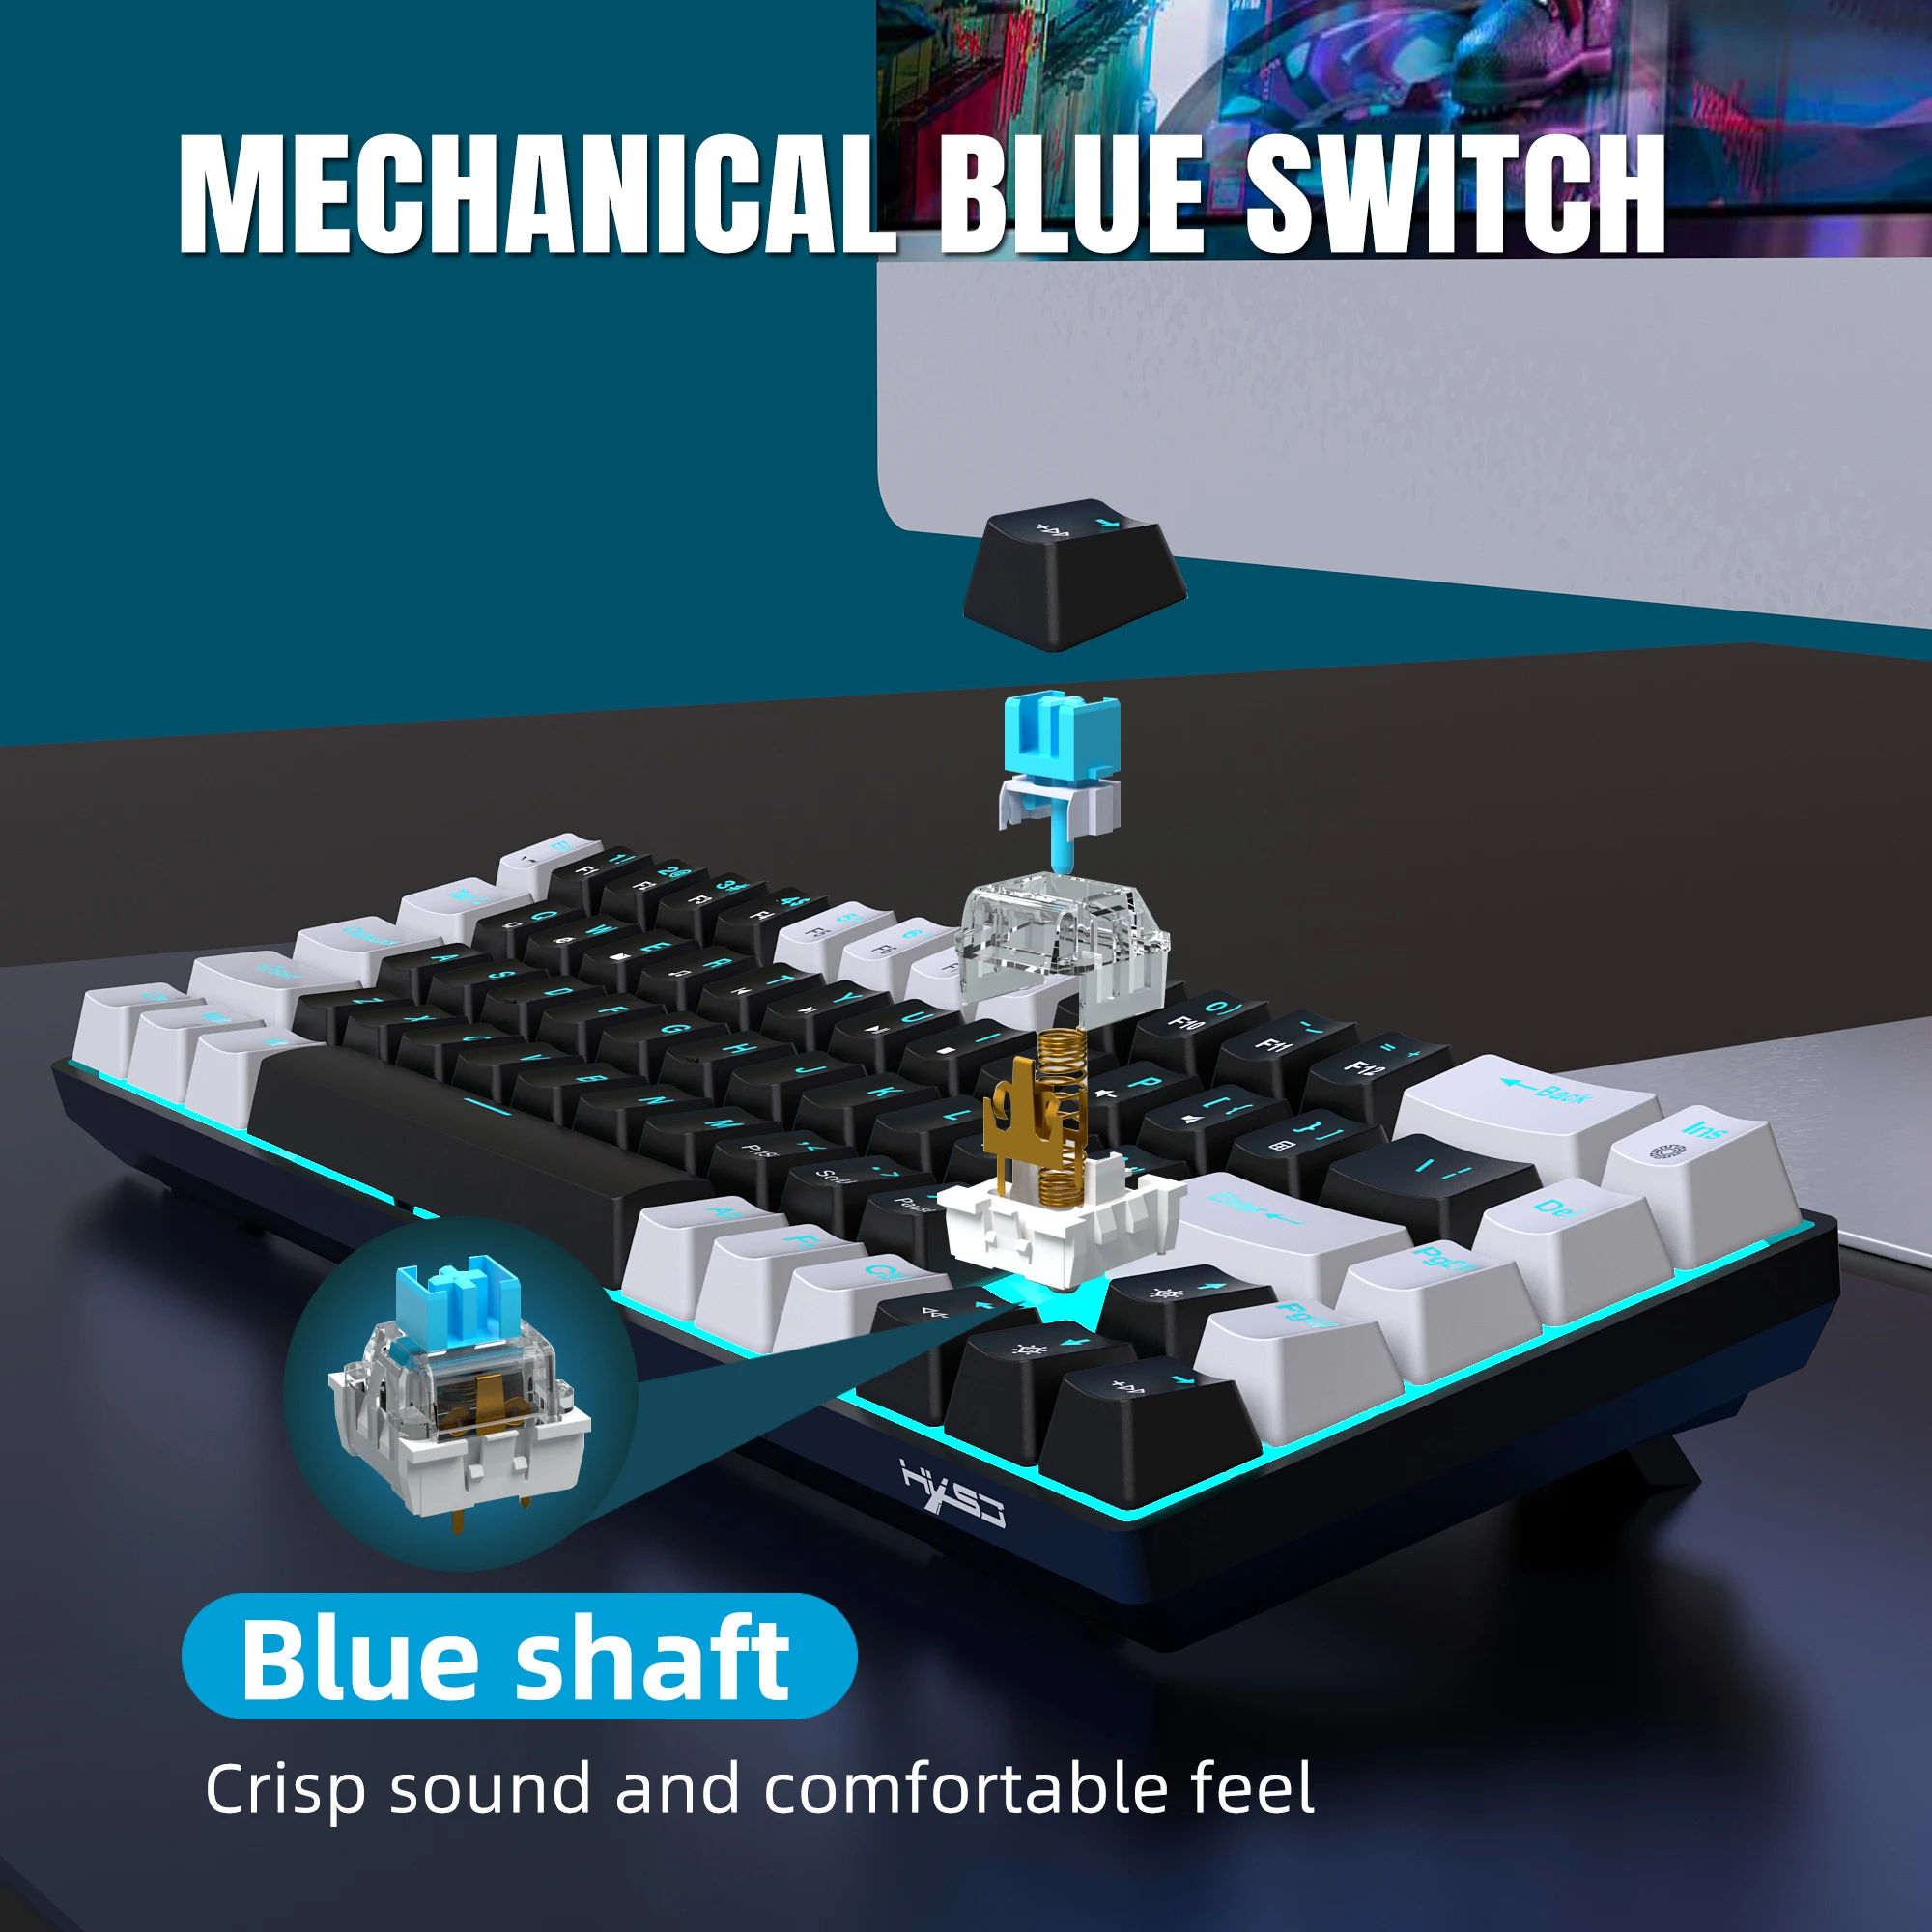 Teclado mecánico de 68 teclas ergonómicas RGB retroiluminado LED, interruptor azul intercambiable en caliente, teclado para juegos para PC, portátil y oficina